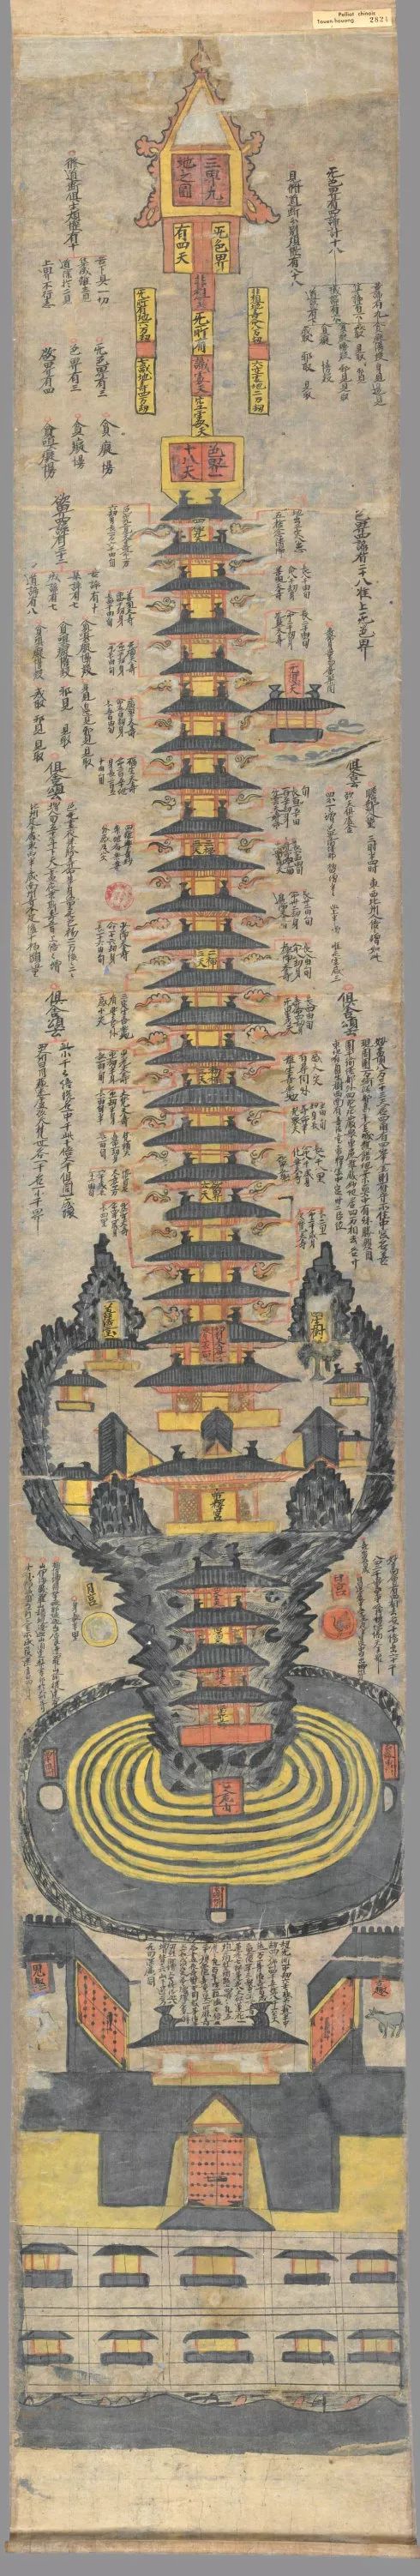 三界九地图世上最早最完整的佛教三千大千世界图天人合一图